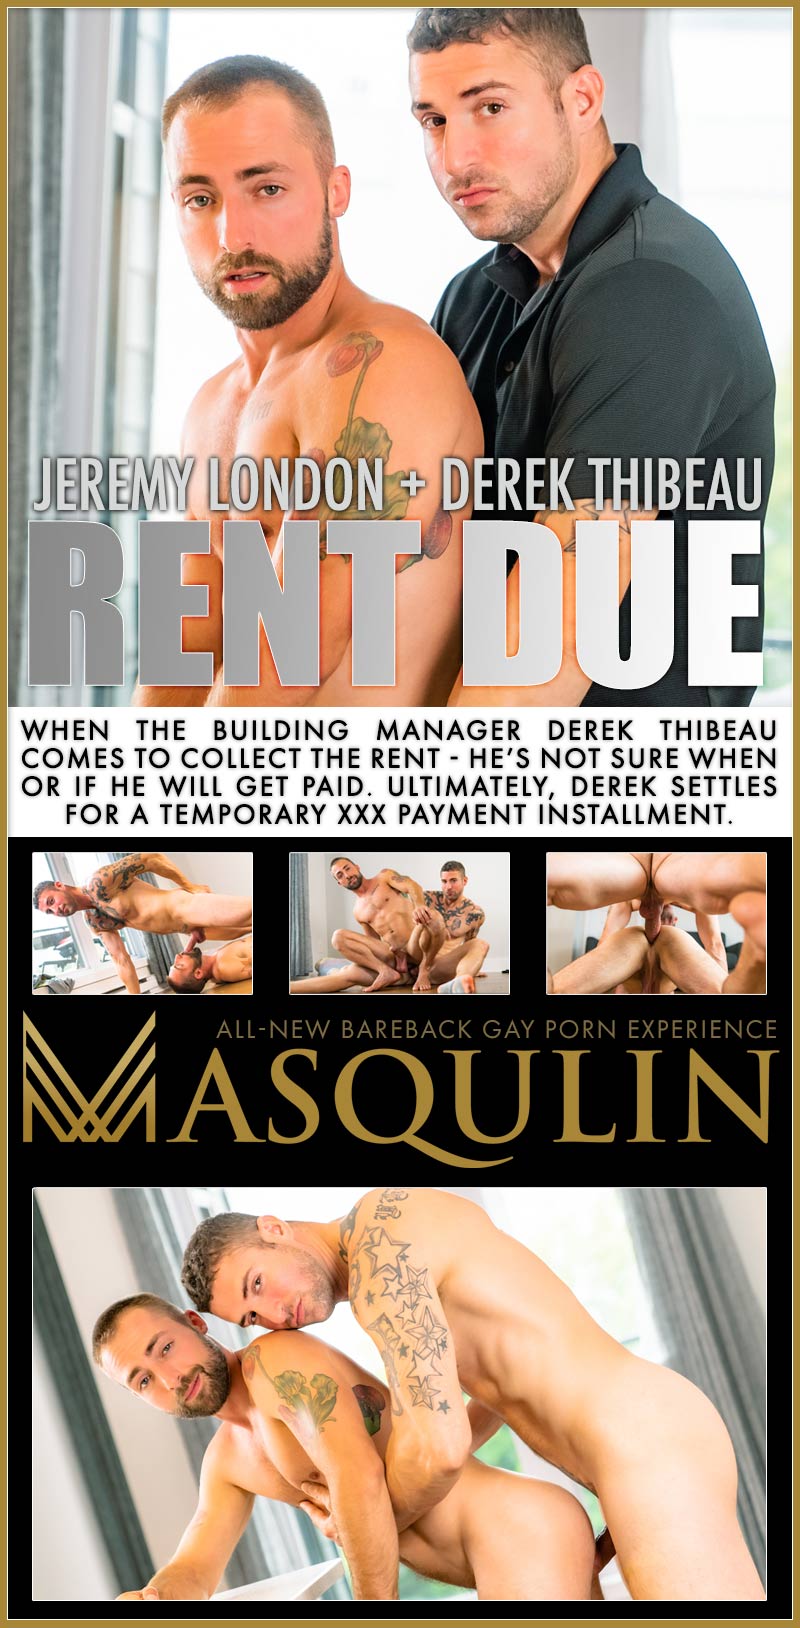 Rent Due (Jeremy London and Derek Thibeau) on Masqulin